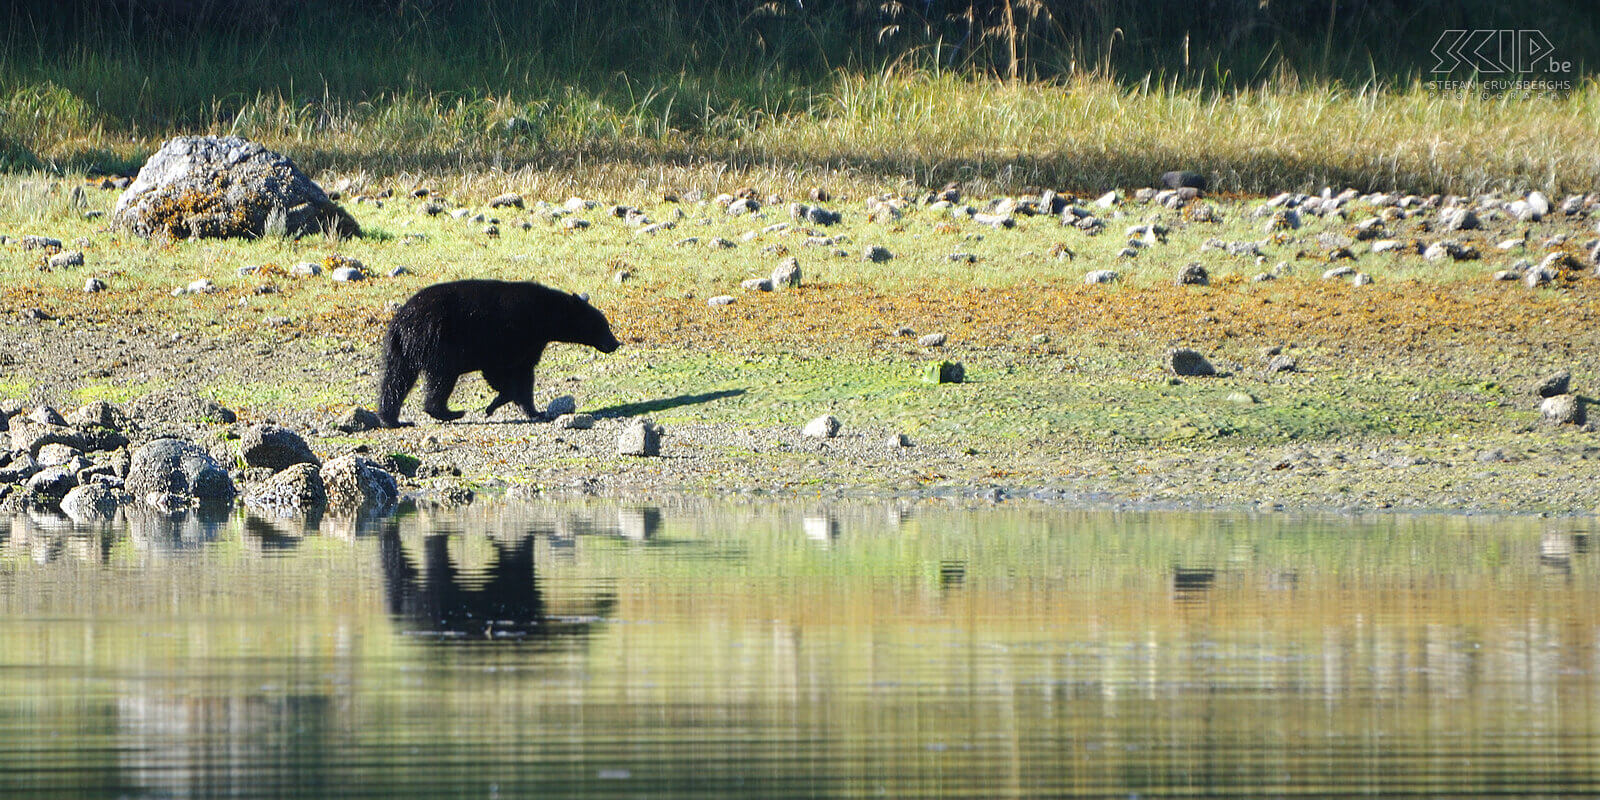 Tofino - Zwarte beer Vanuit Tofino boeken we een boottocht om 's ochtends de rotsstranden van de vele eilanden af te speuren naar zwarte beren (Ursus americanus). De zwarte beren zoeken er bij eb tussen de rotsen naar krabben.  Stefan Cruysberghs